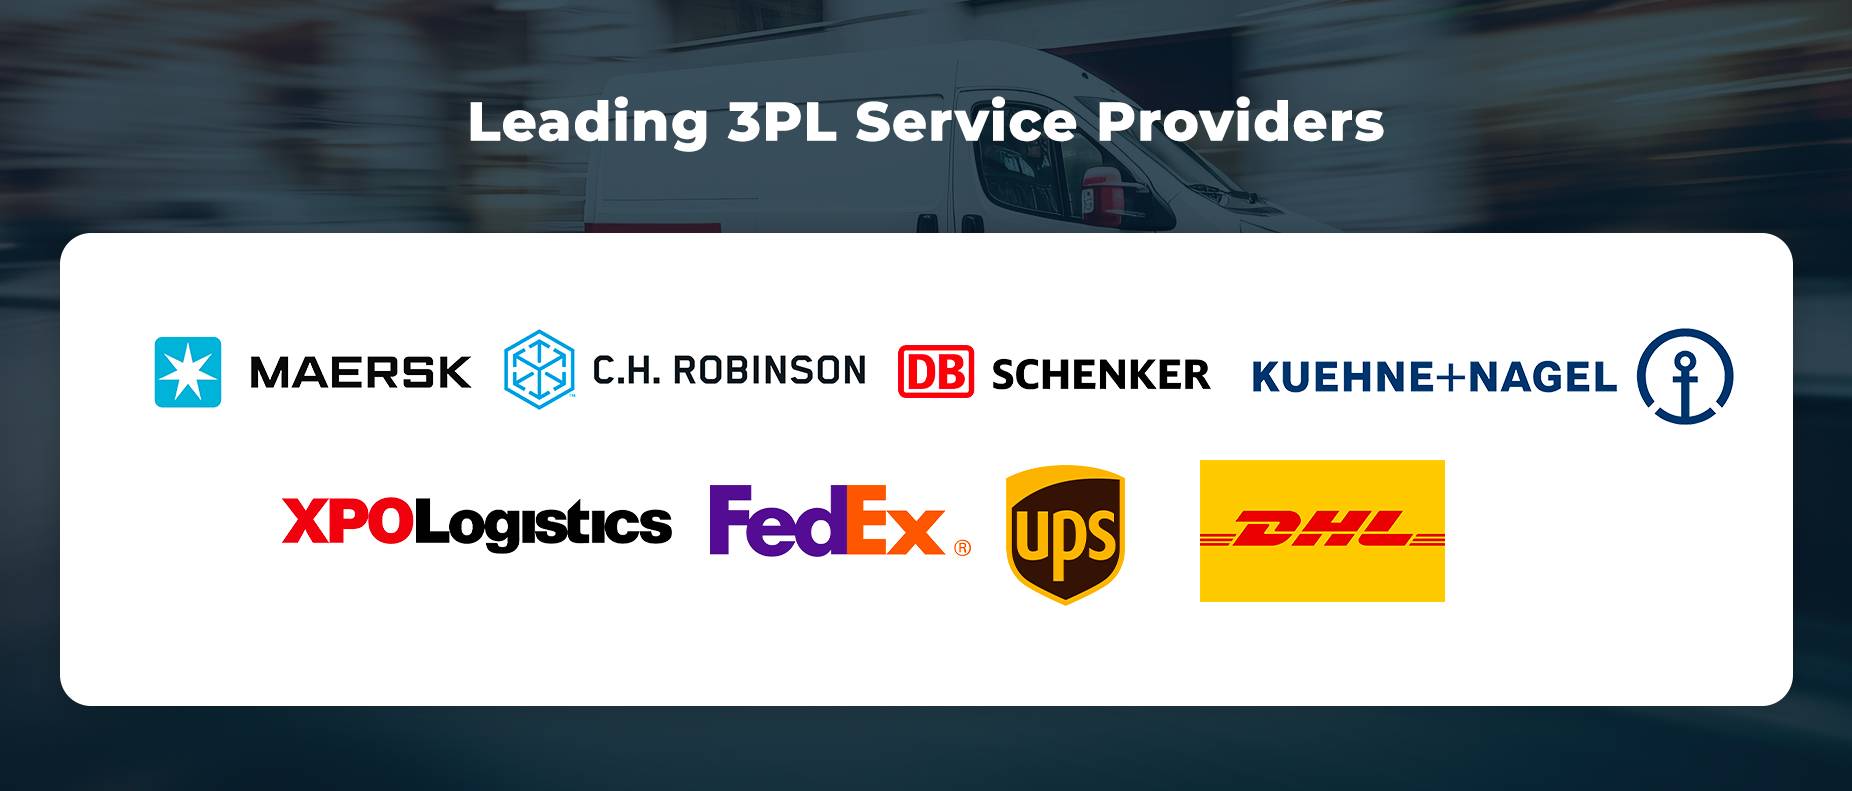 Principales proveedores de servicios 3PL